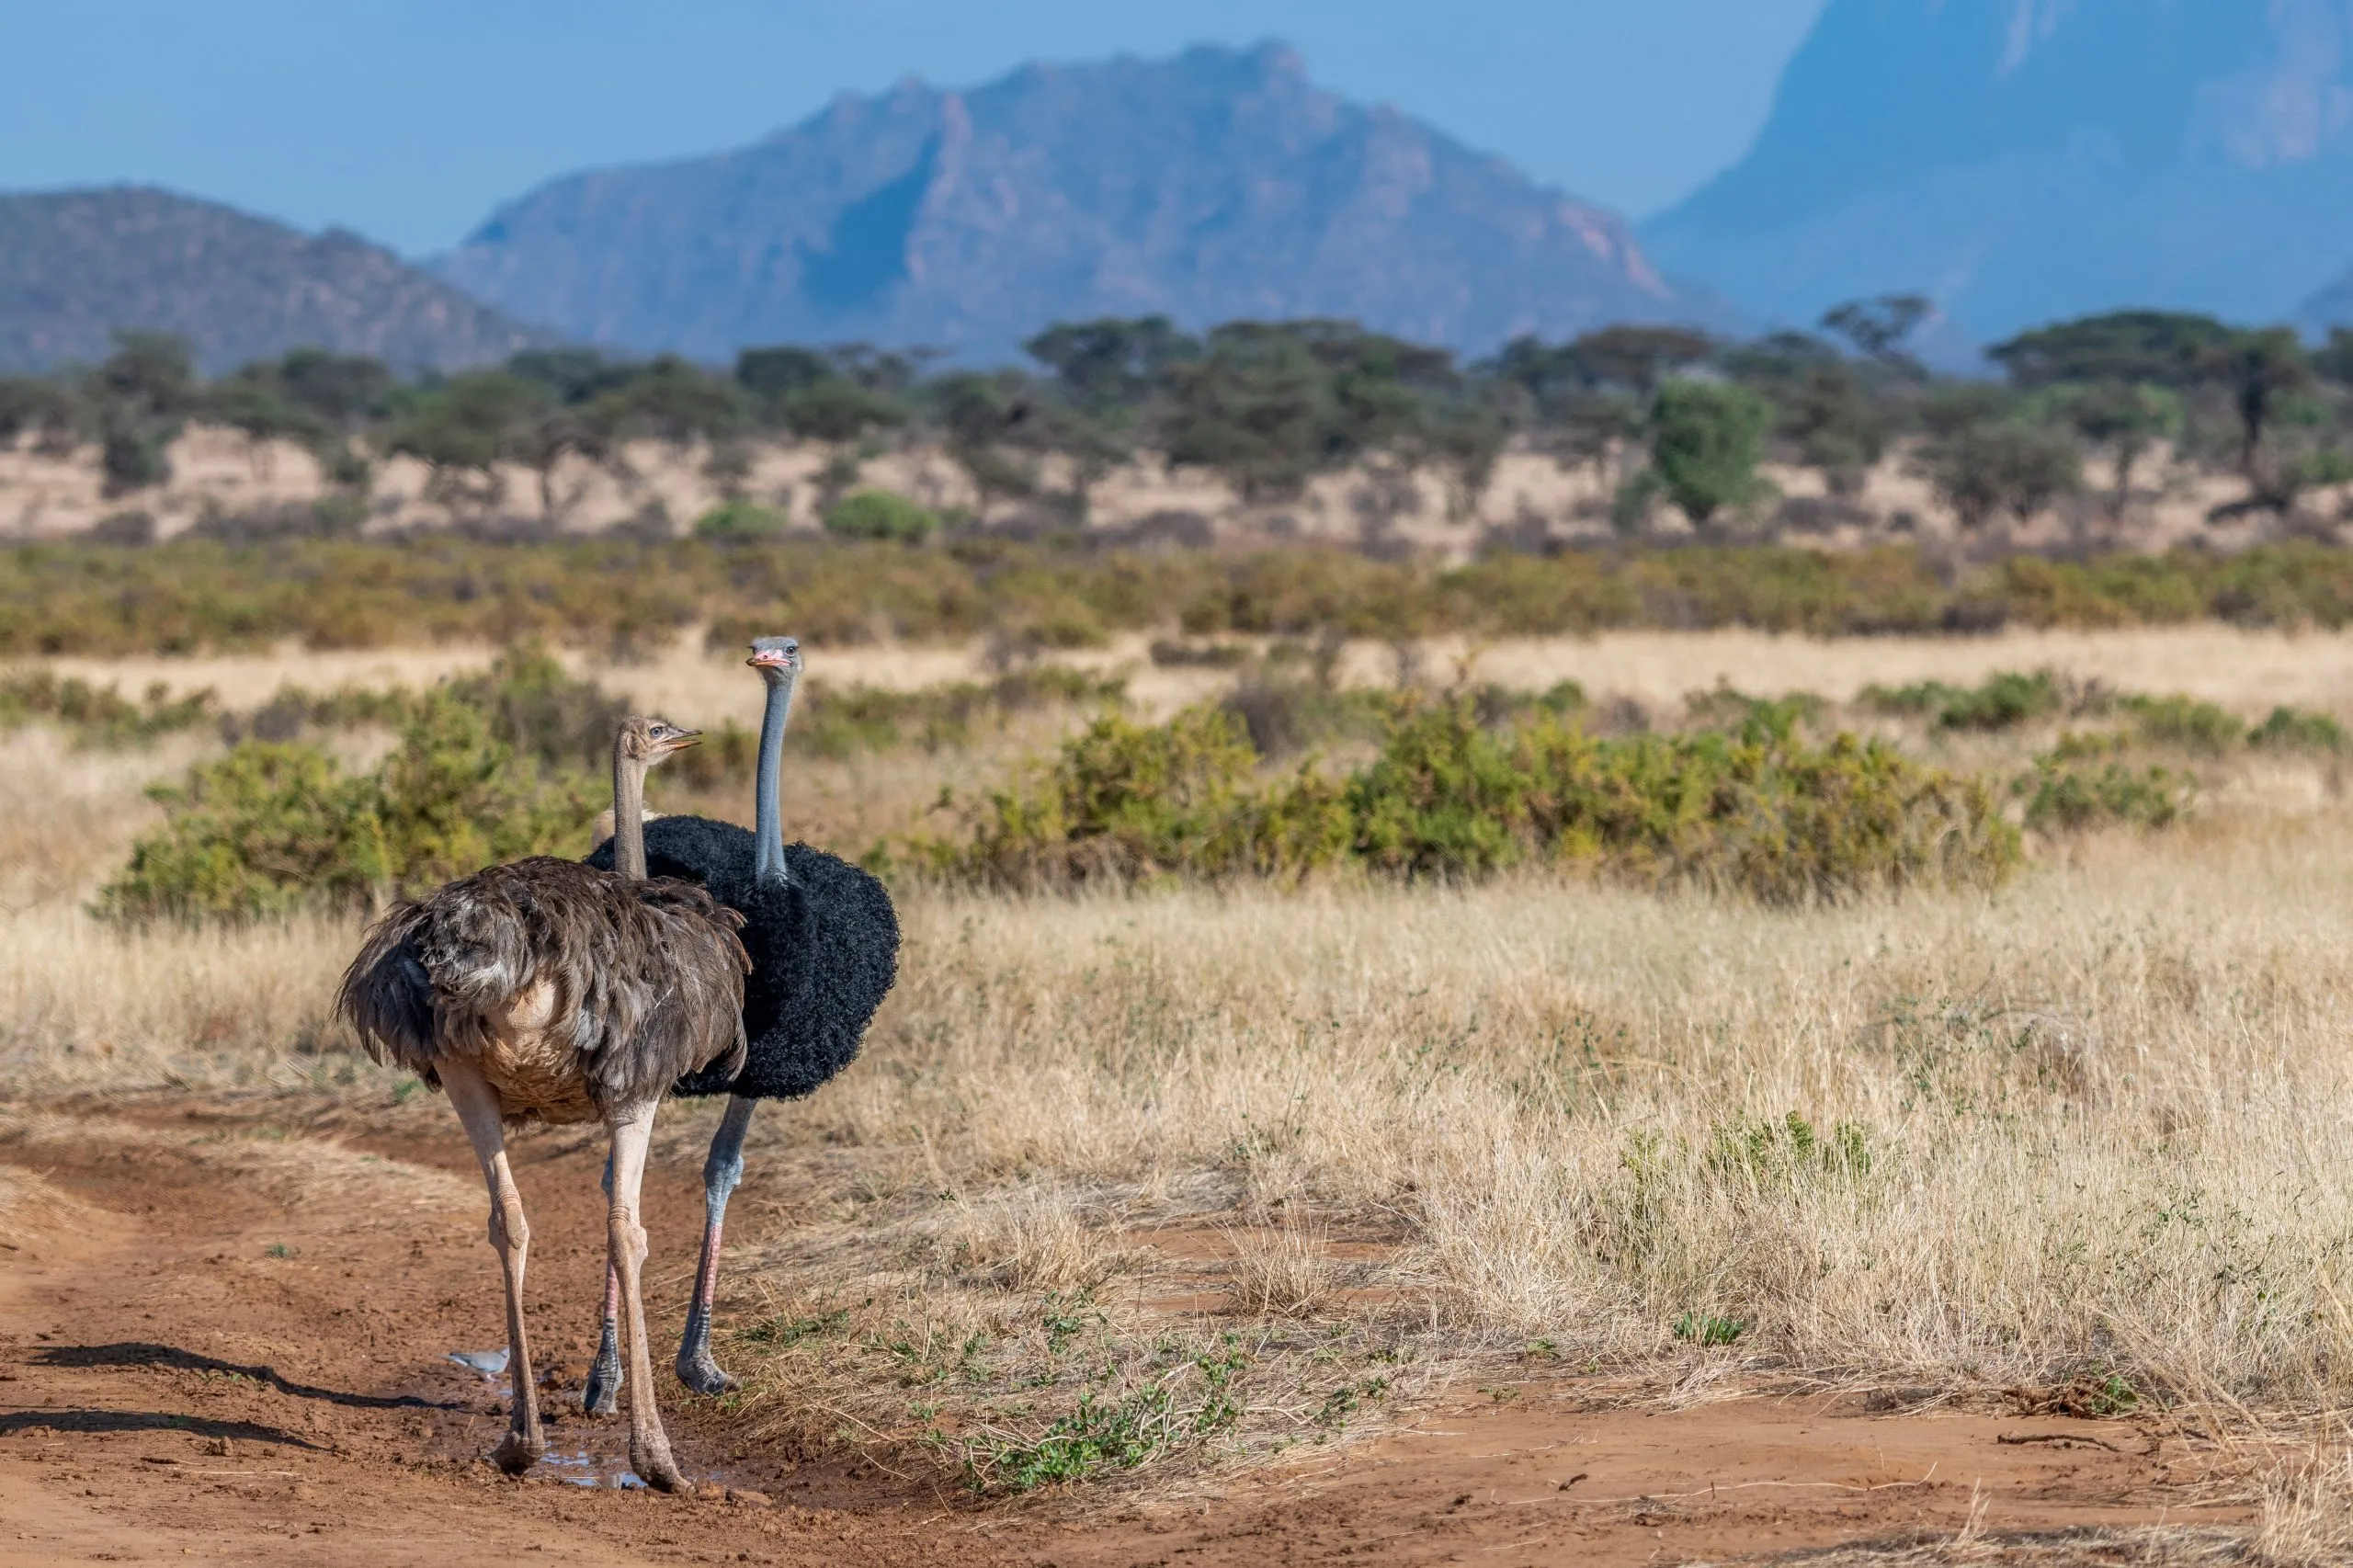 Halvtorrt landskap i Samburu nationalreservat, Kenya. Sällsynt hane och hona av somalisk struts i förgrunden. Ett par som parar sig. Halsens och lårens hudfärg är gråblå. Enorm fågel som inte kan flyga. Afrika.